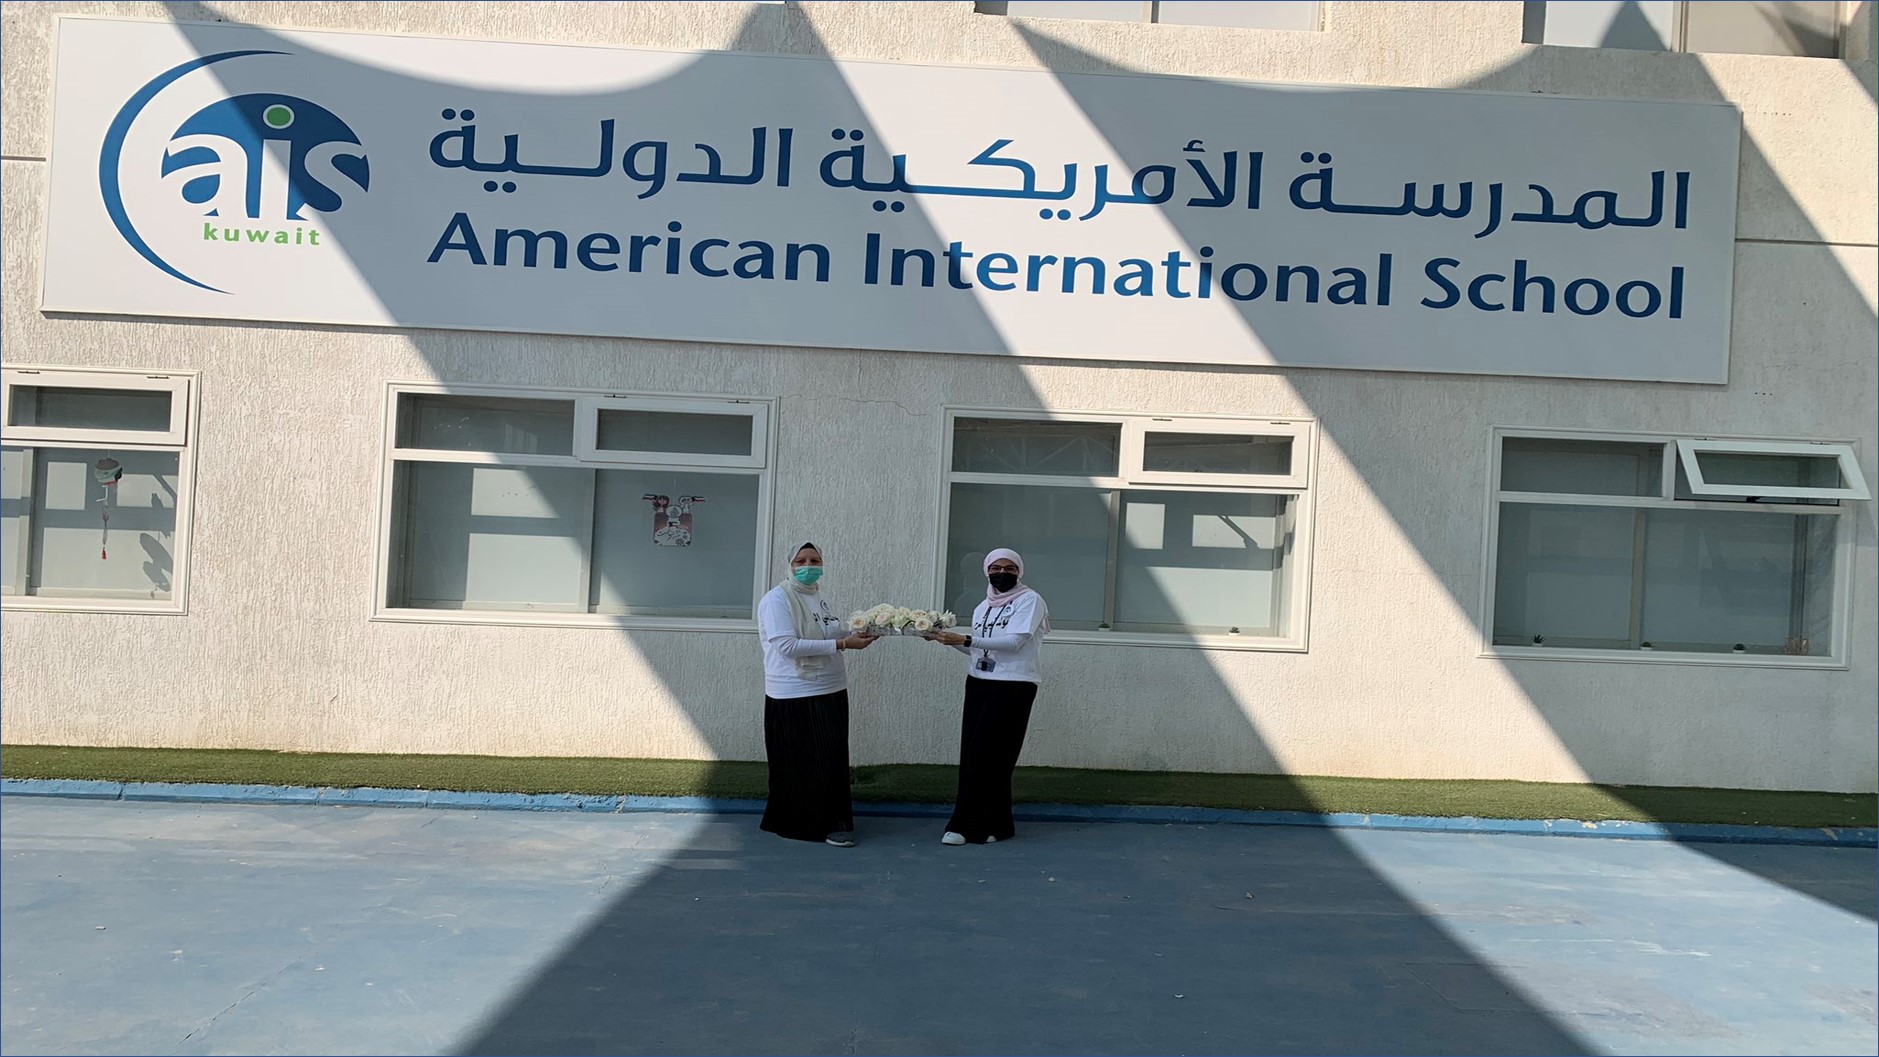 المدرسة الأمريكية الدولية بالكويت تقدم وظائف للرجال والسيدات